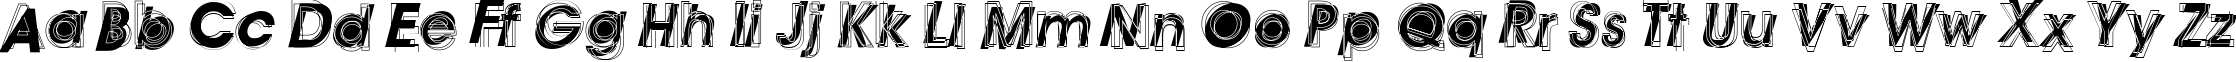 Пример написания английского алфавита шрифтом Astigma Regular